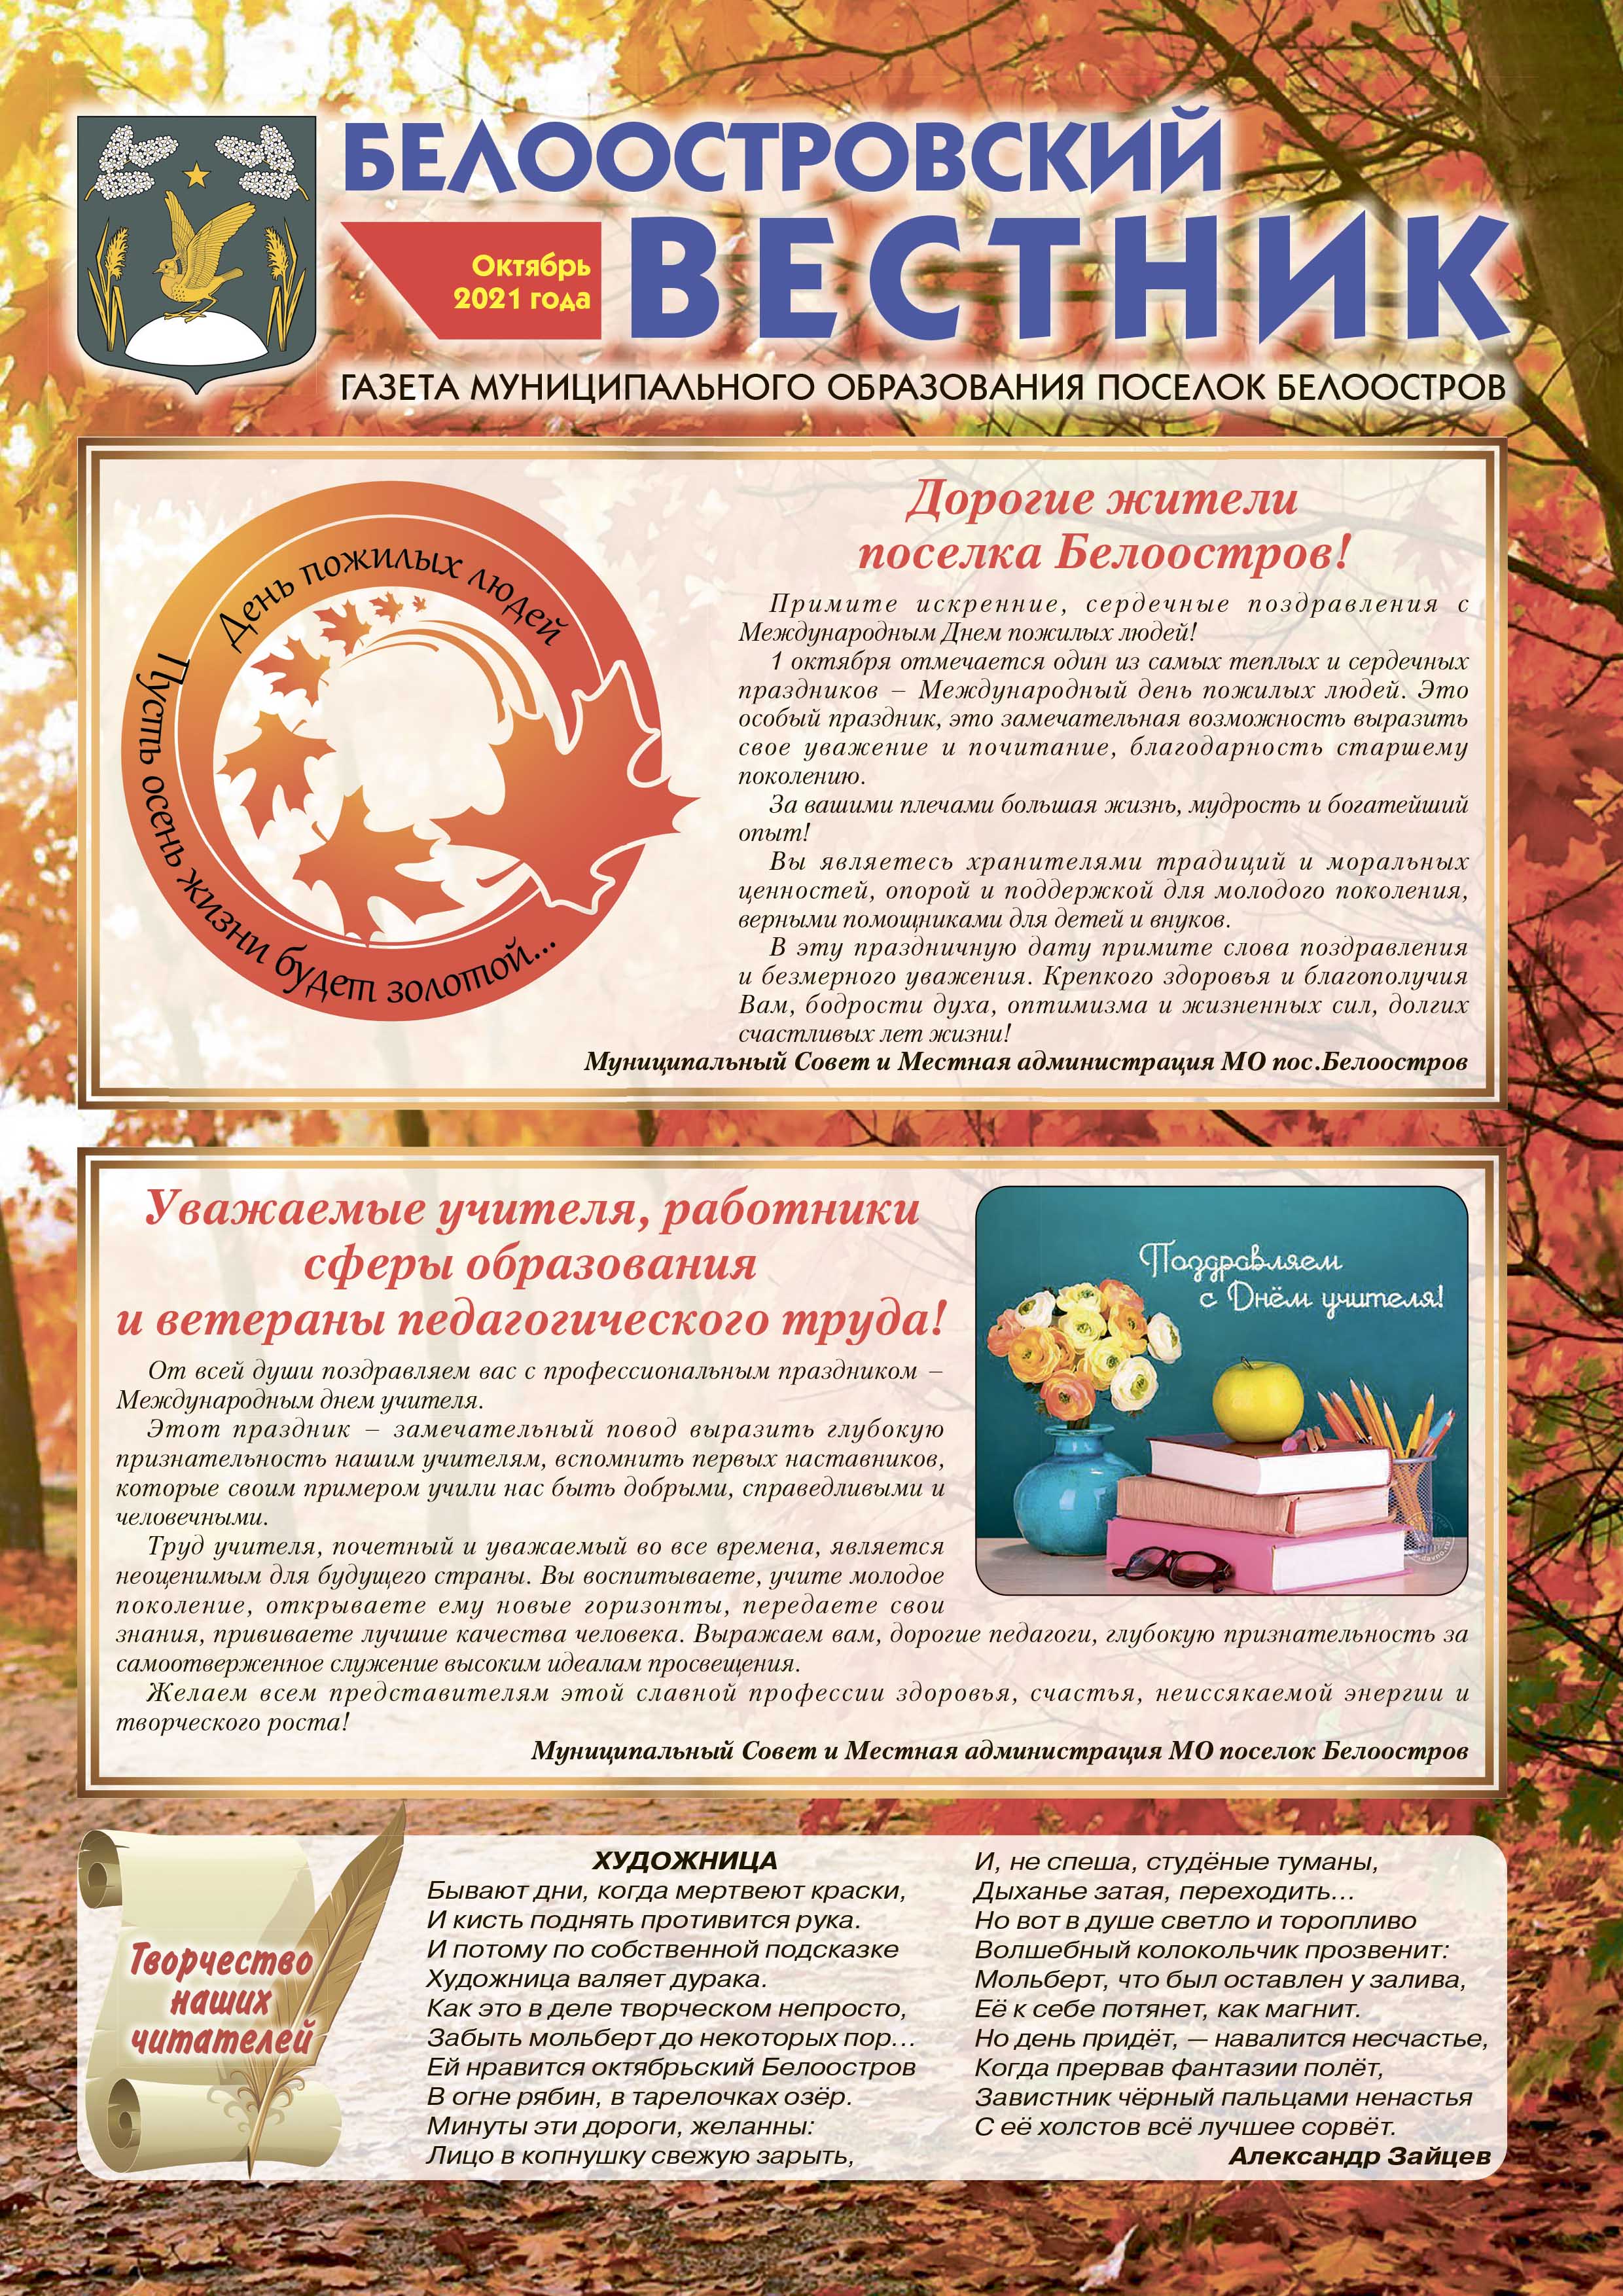 Белоостровский Вестник за октябрь 2021 г.